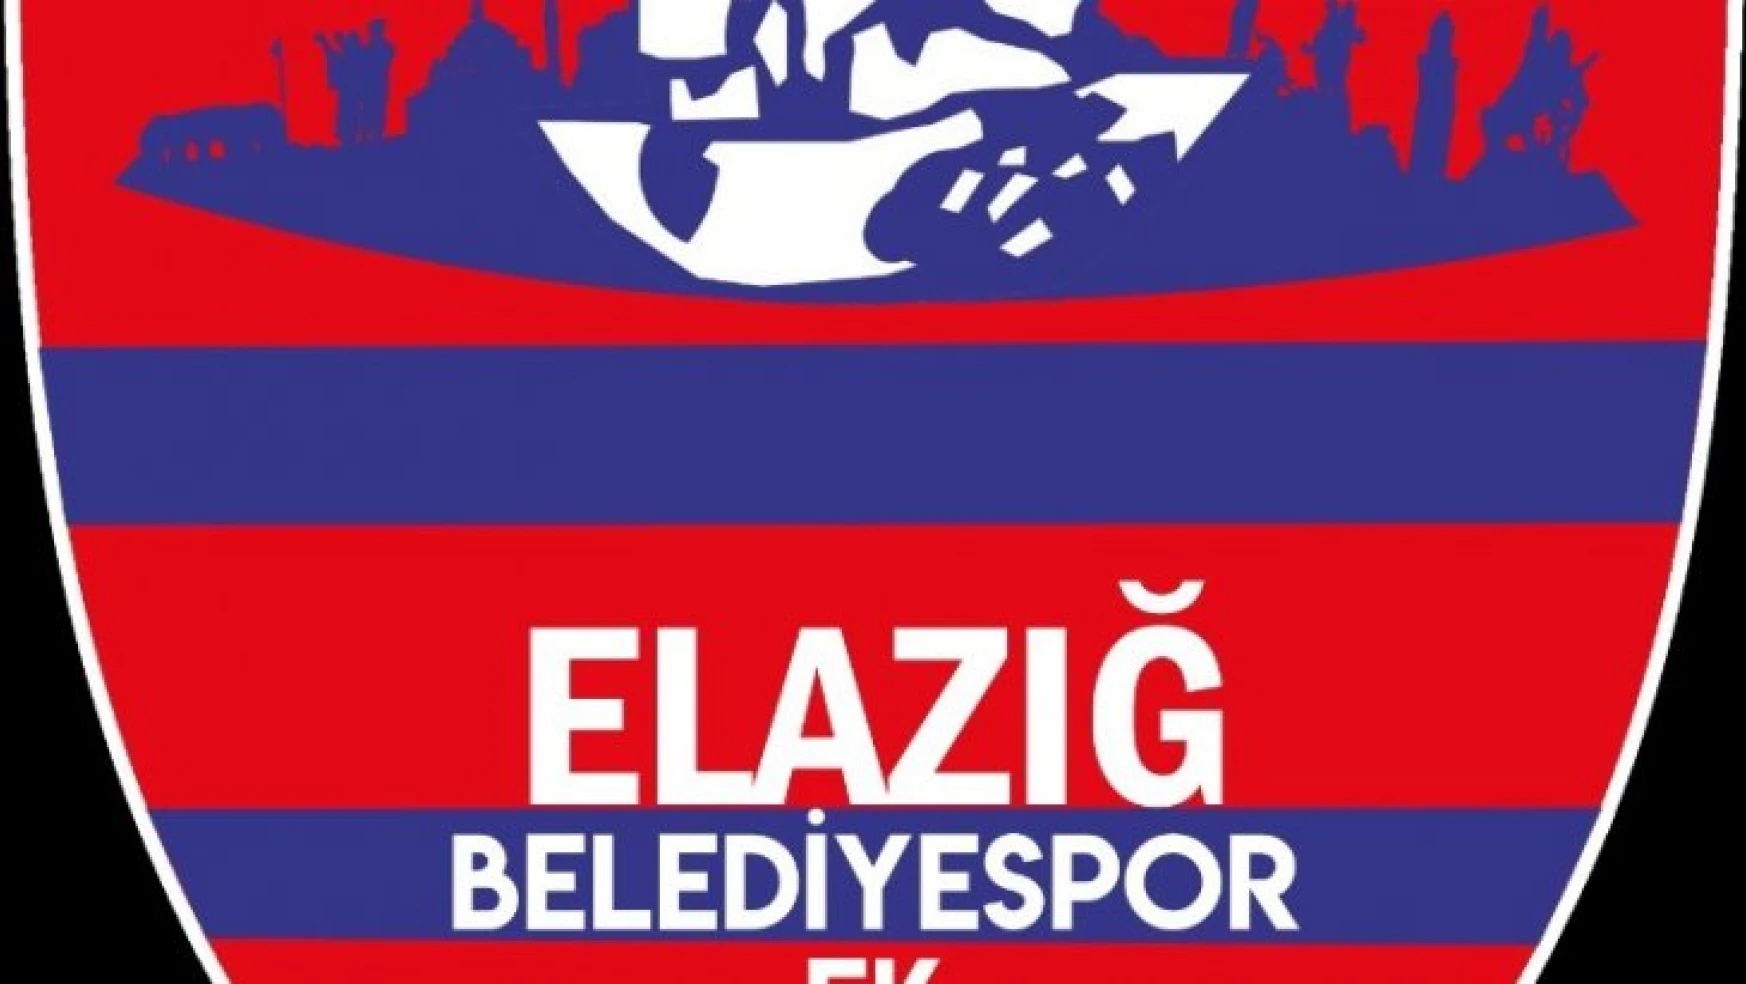 Elaziz Belediyespor'un İsmi Değişti